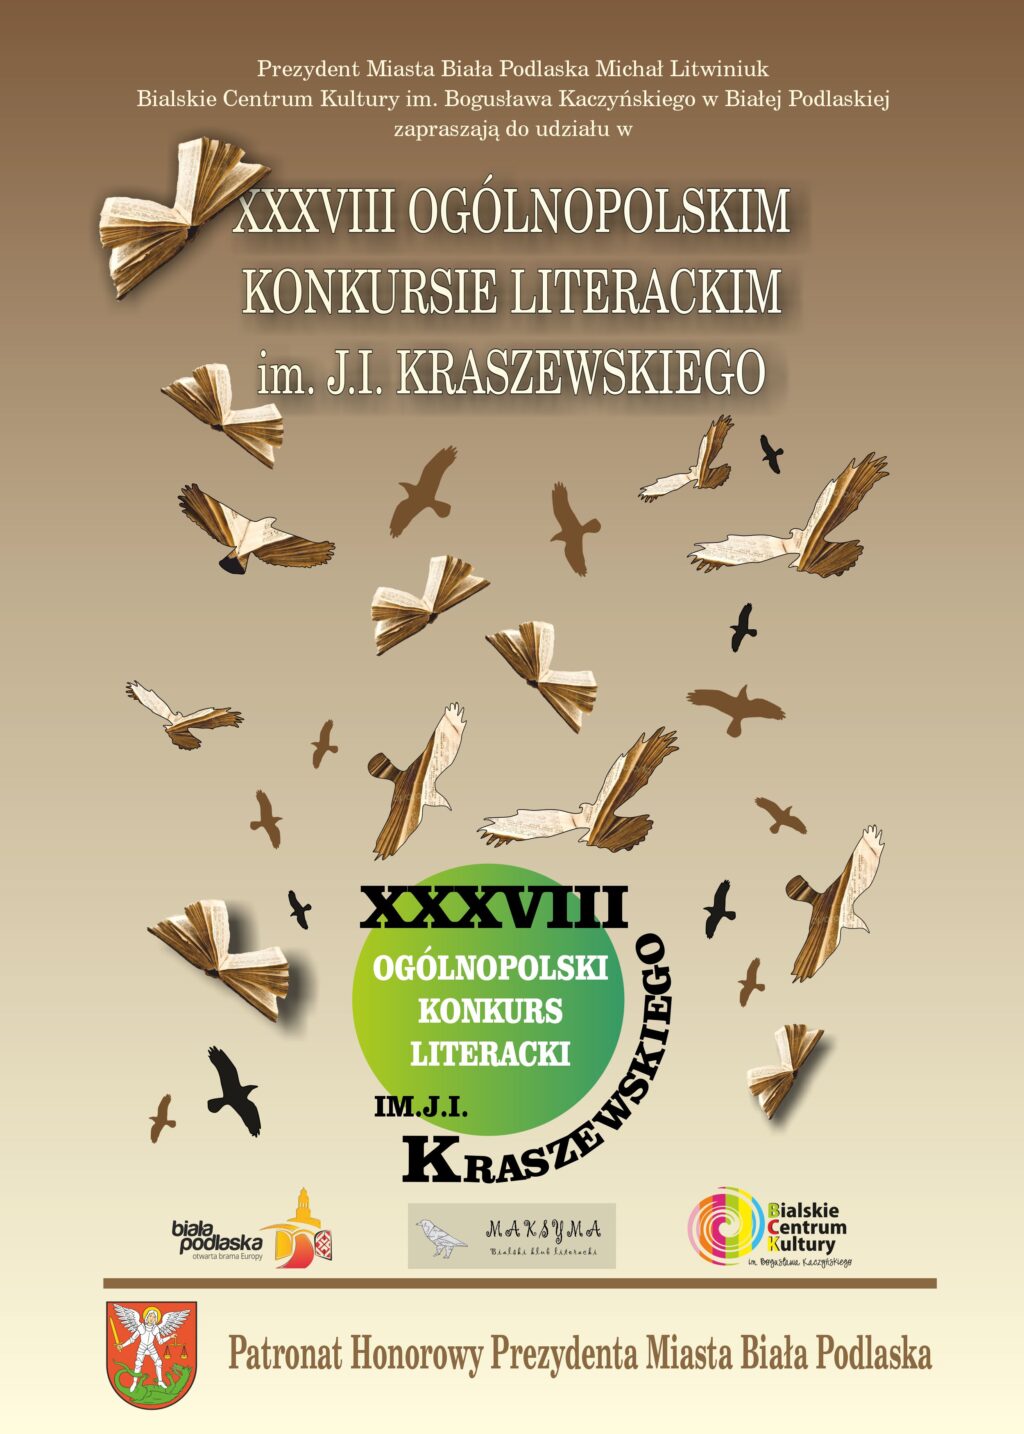 XXXVIII Ogólnopolski Konkurs Literacki im. J. I. Kraszewskiego